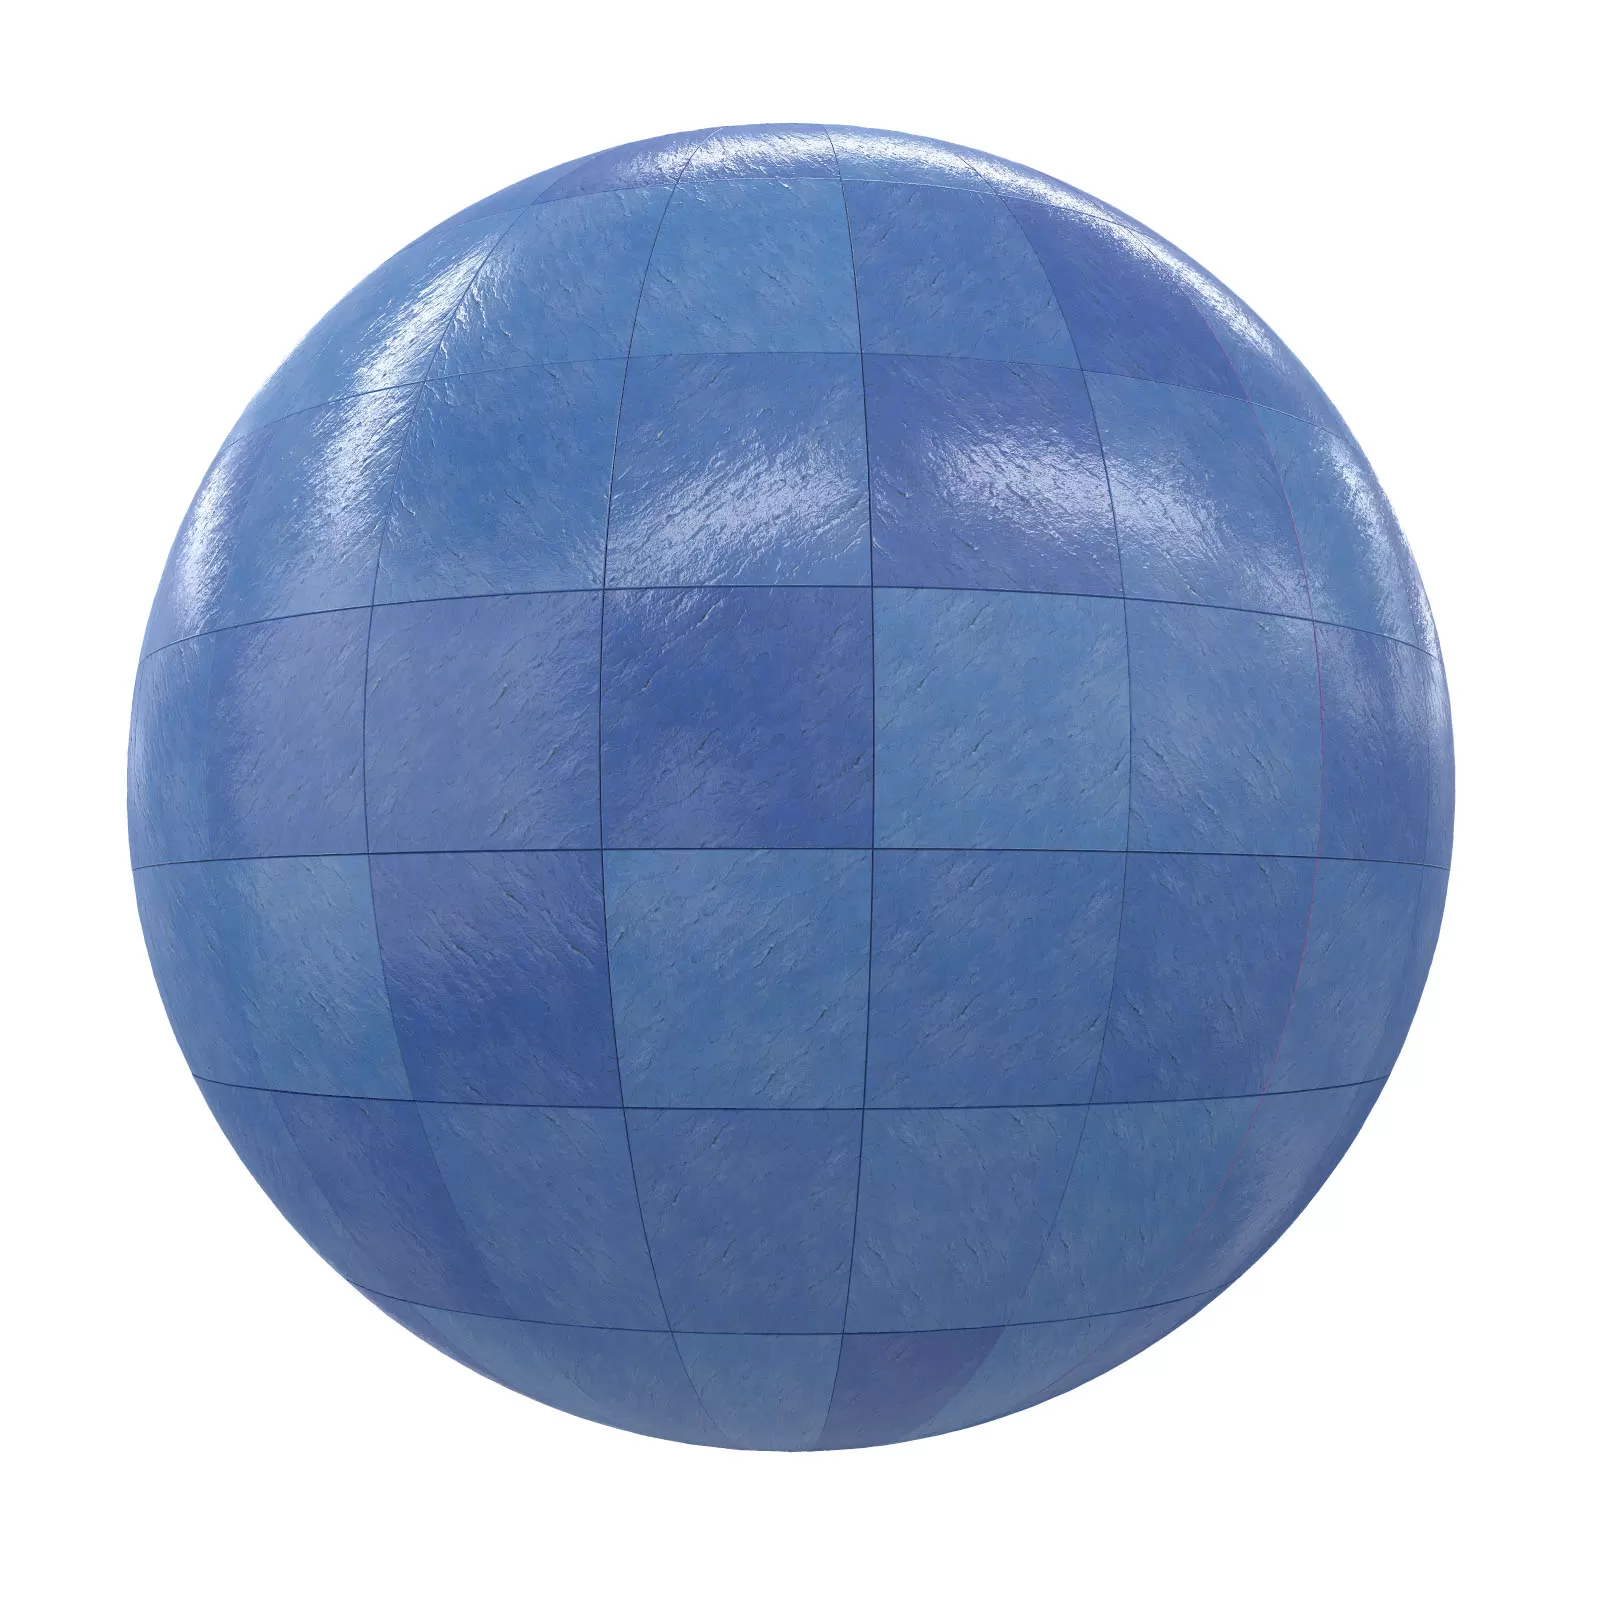 PBR CGAXIS TEXTURES – TILES – Blue Tiles 2